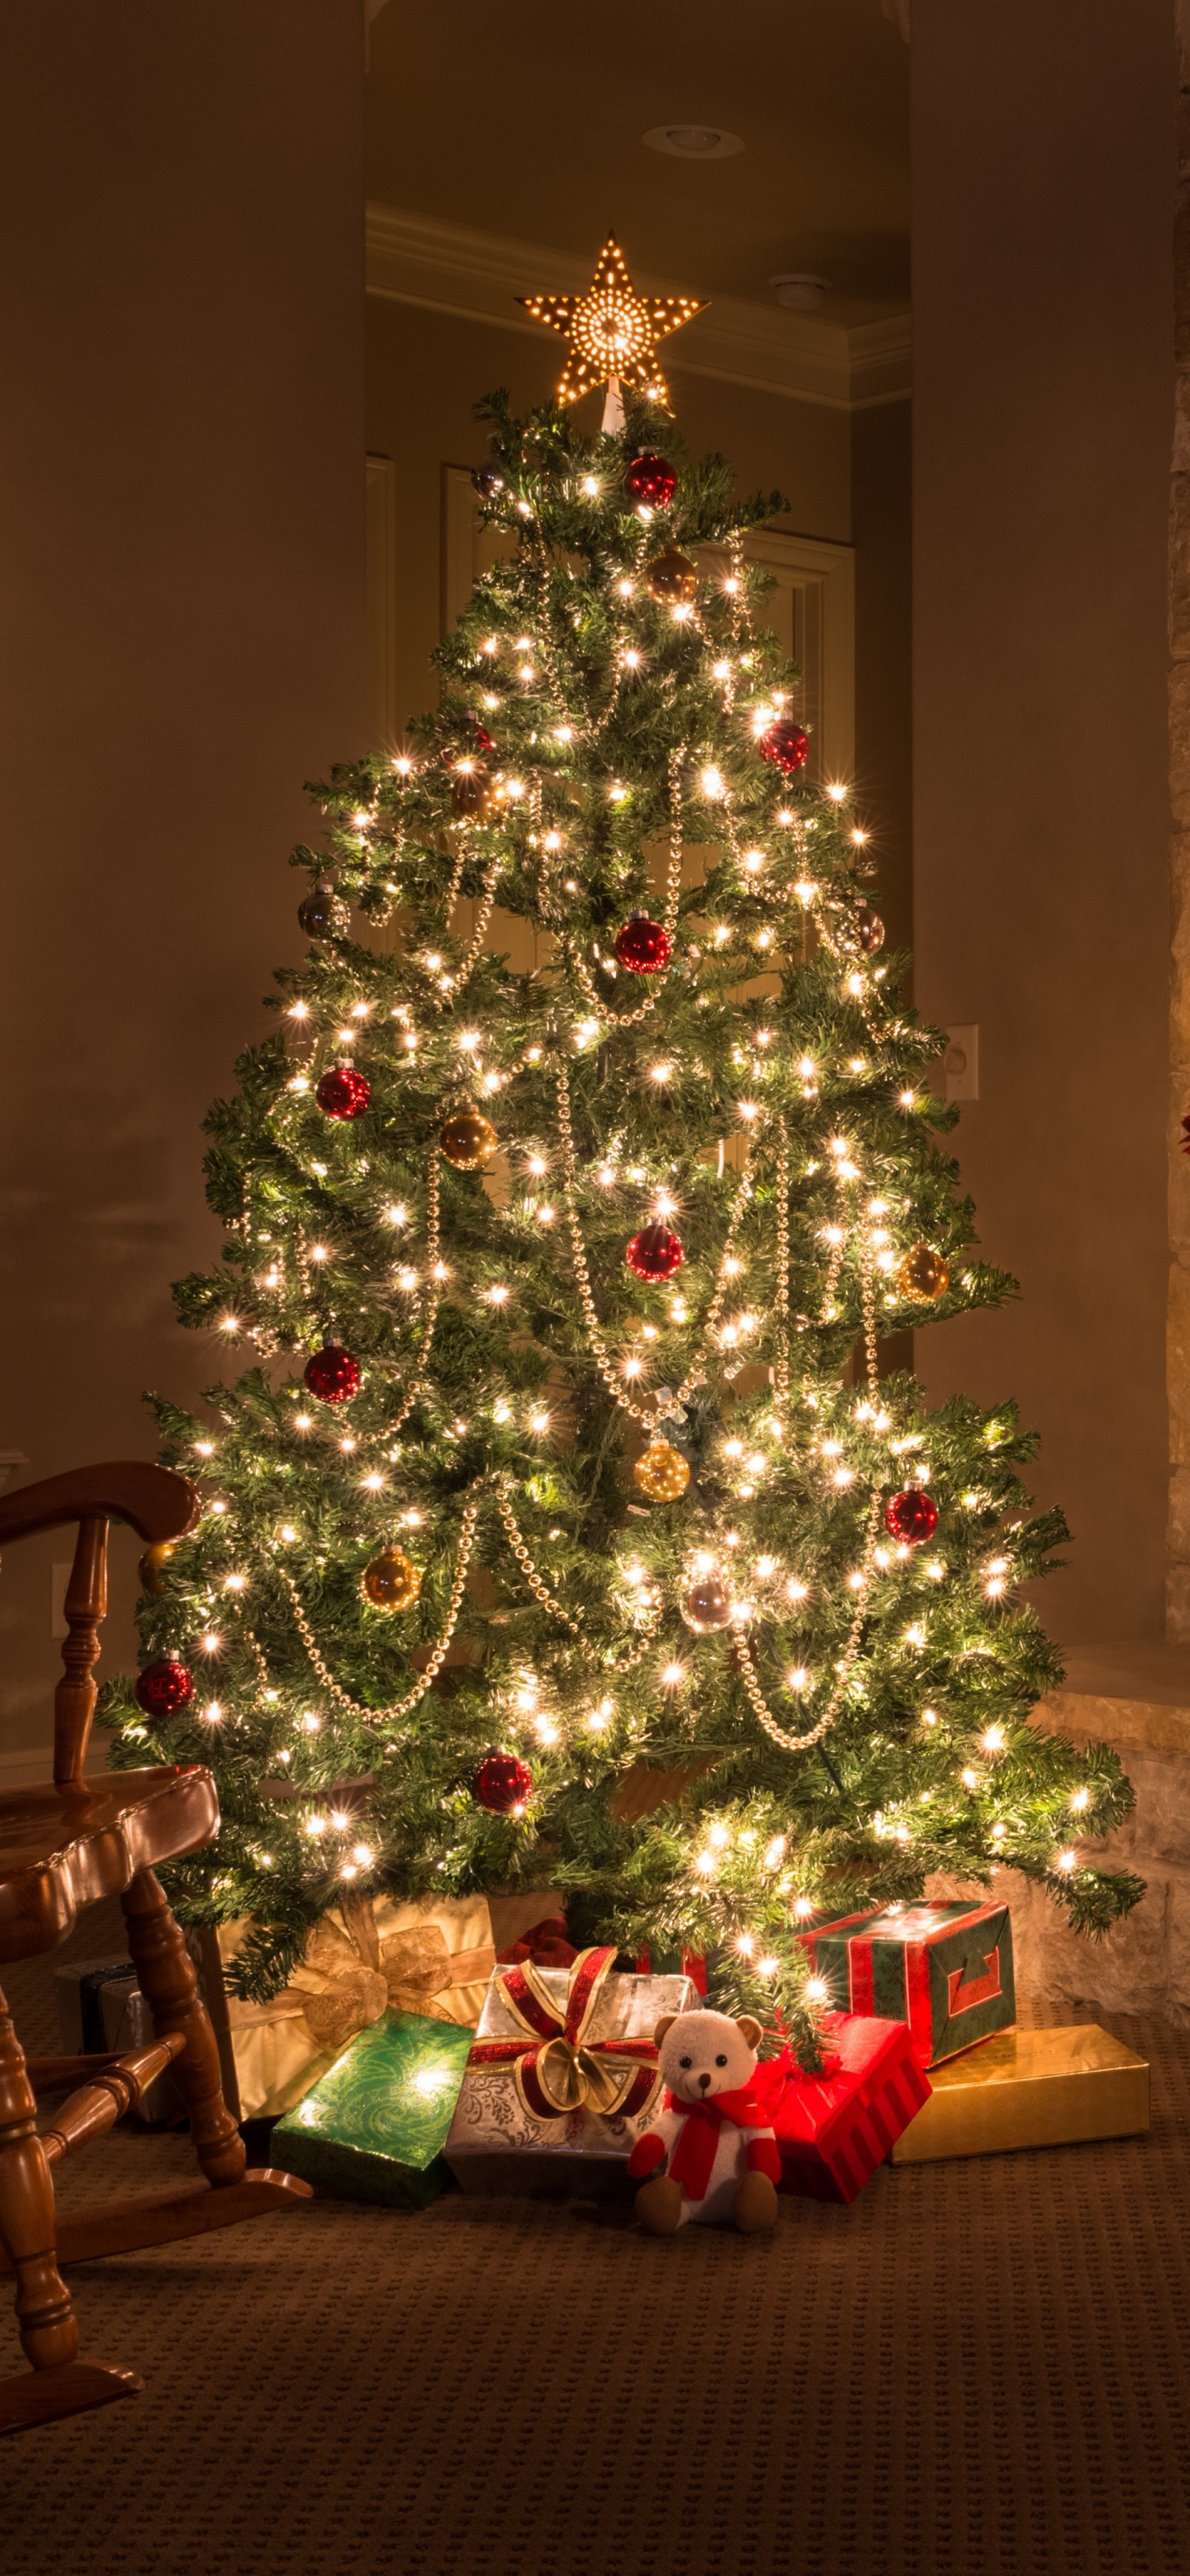 圣诞节那天, 圣诞装饰, 圣诞树, 圣诞节, 圣诞前夕 壁纸 1242x2688 允许